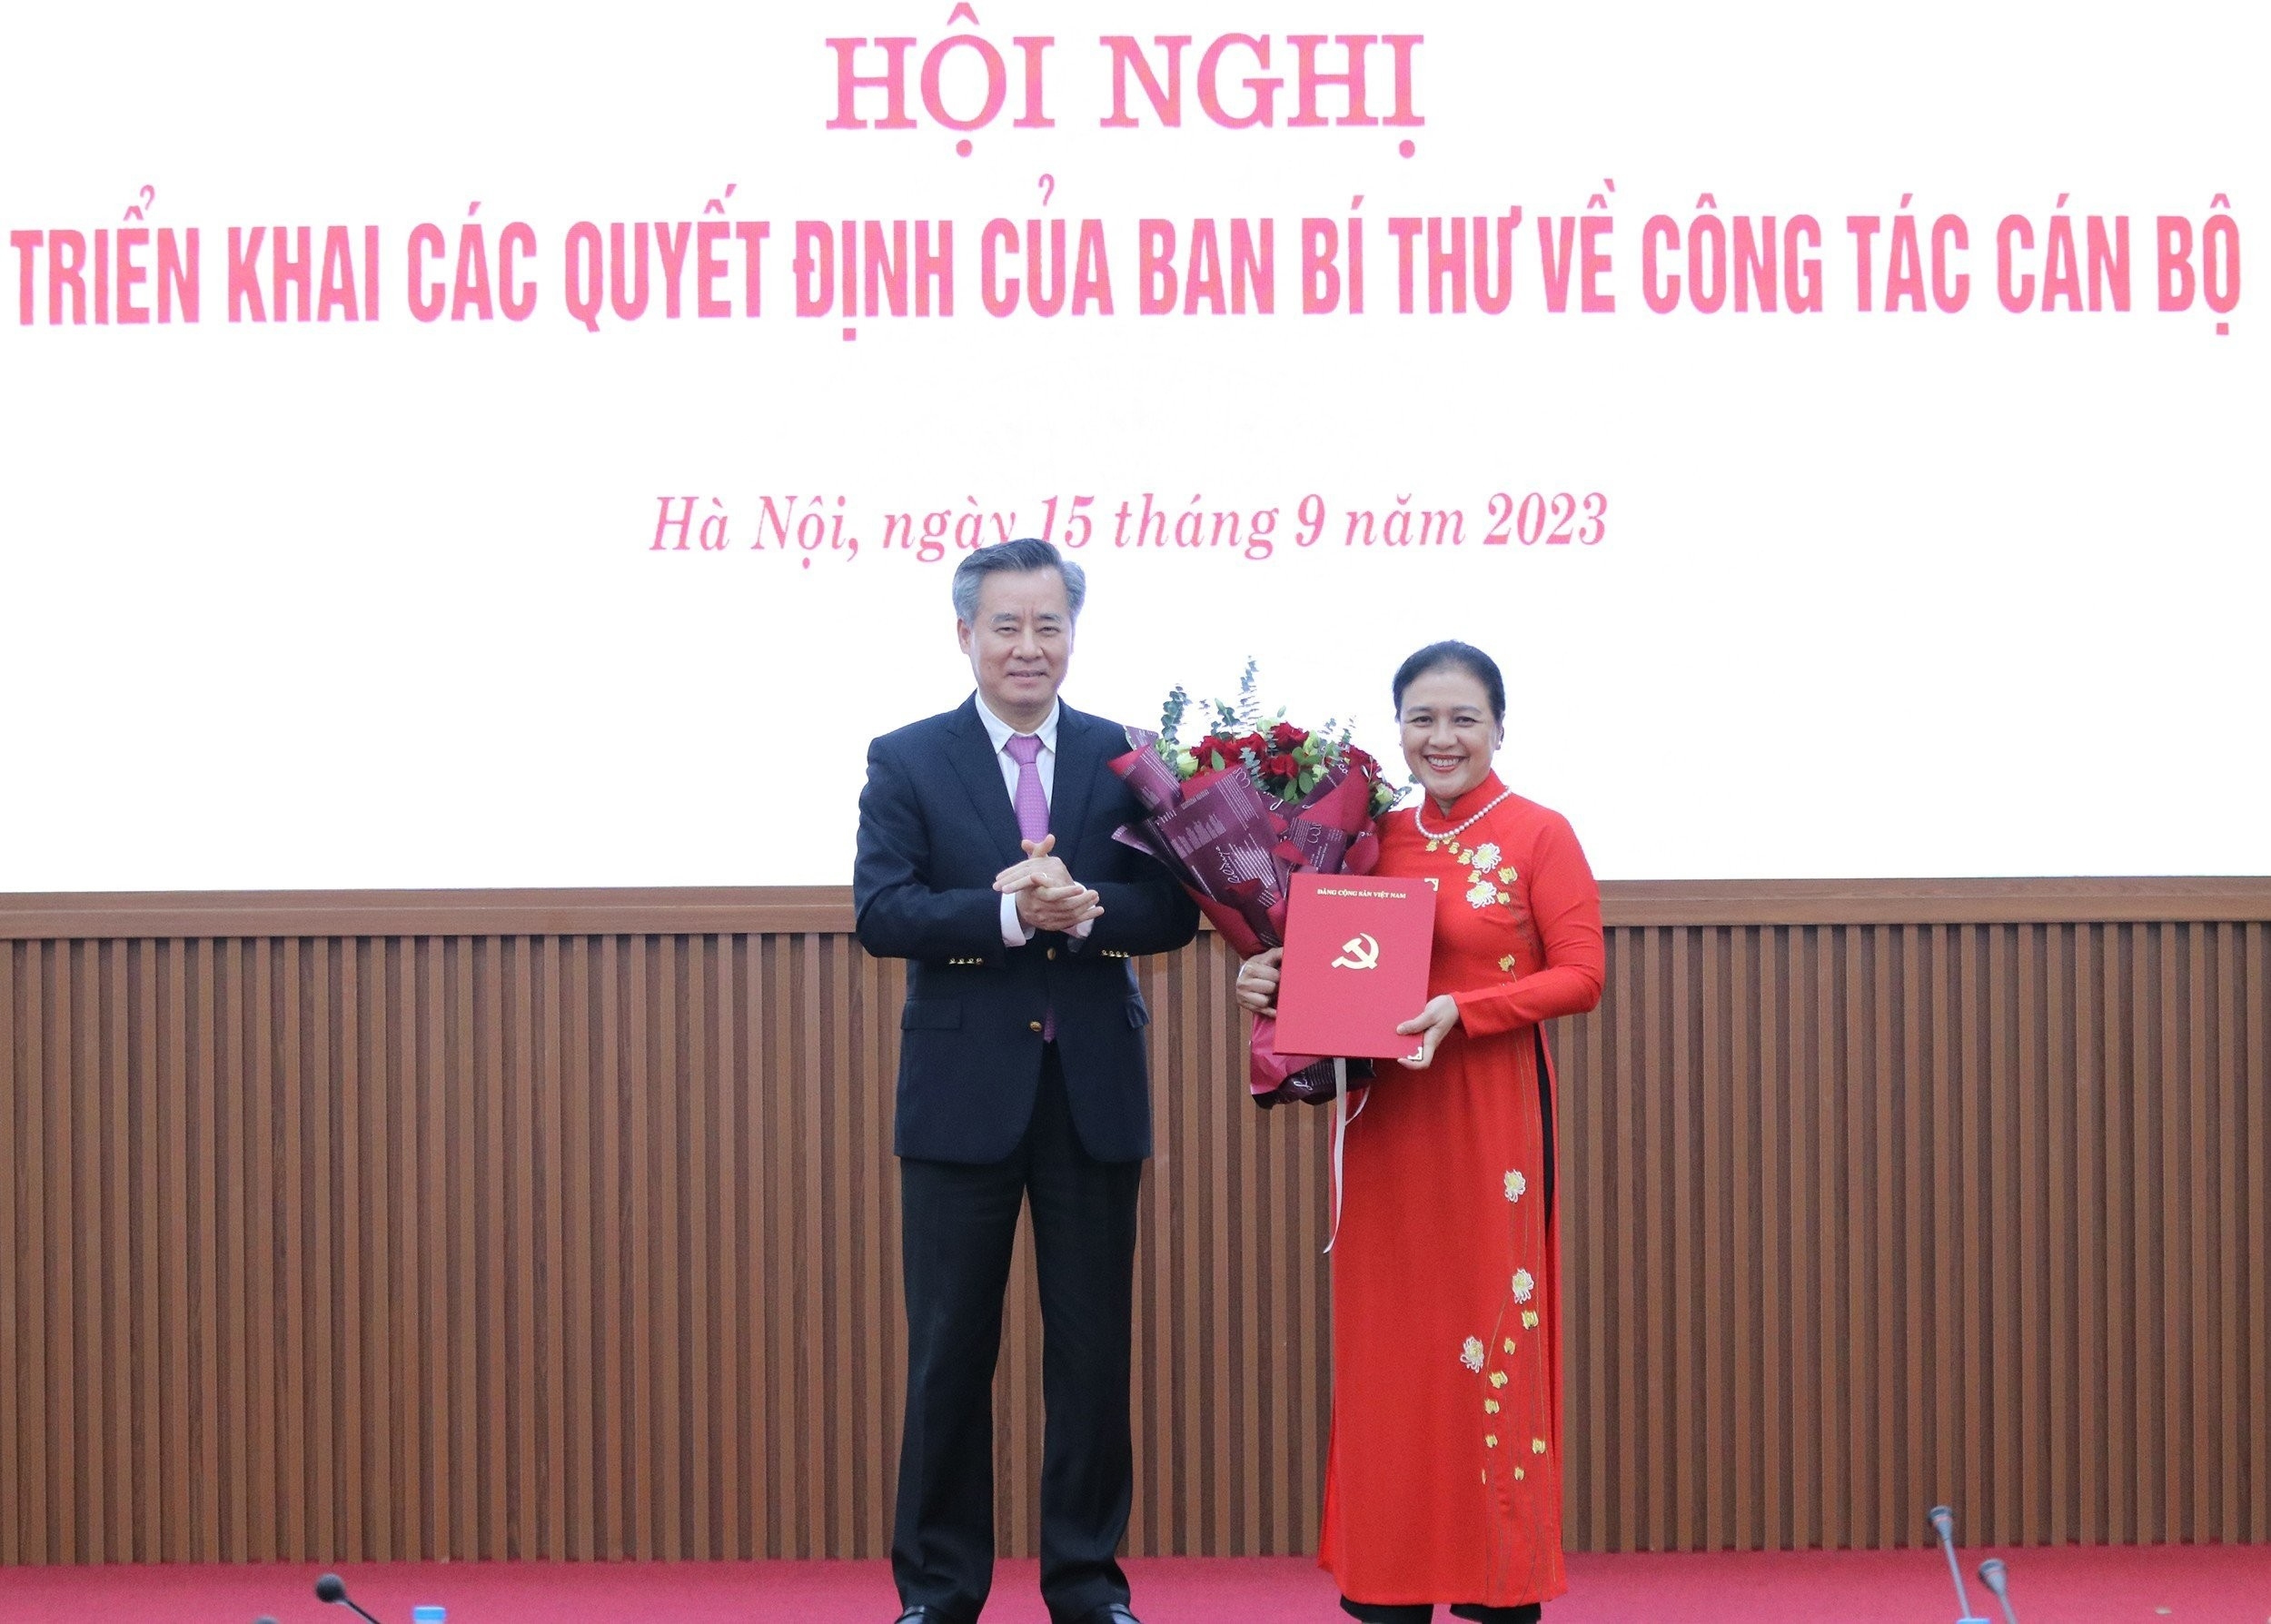 越共中央组织部副部长阮光阳同志向阮芳娥同志转交《决定》并送祝贺花。